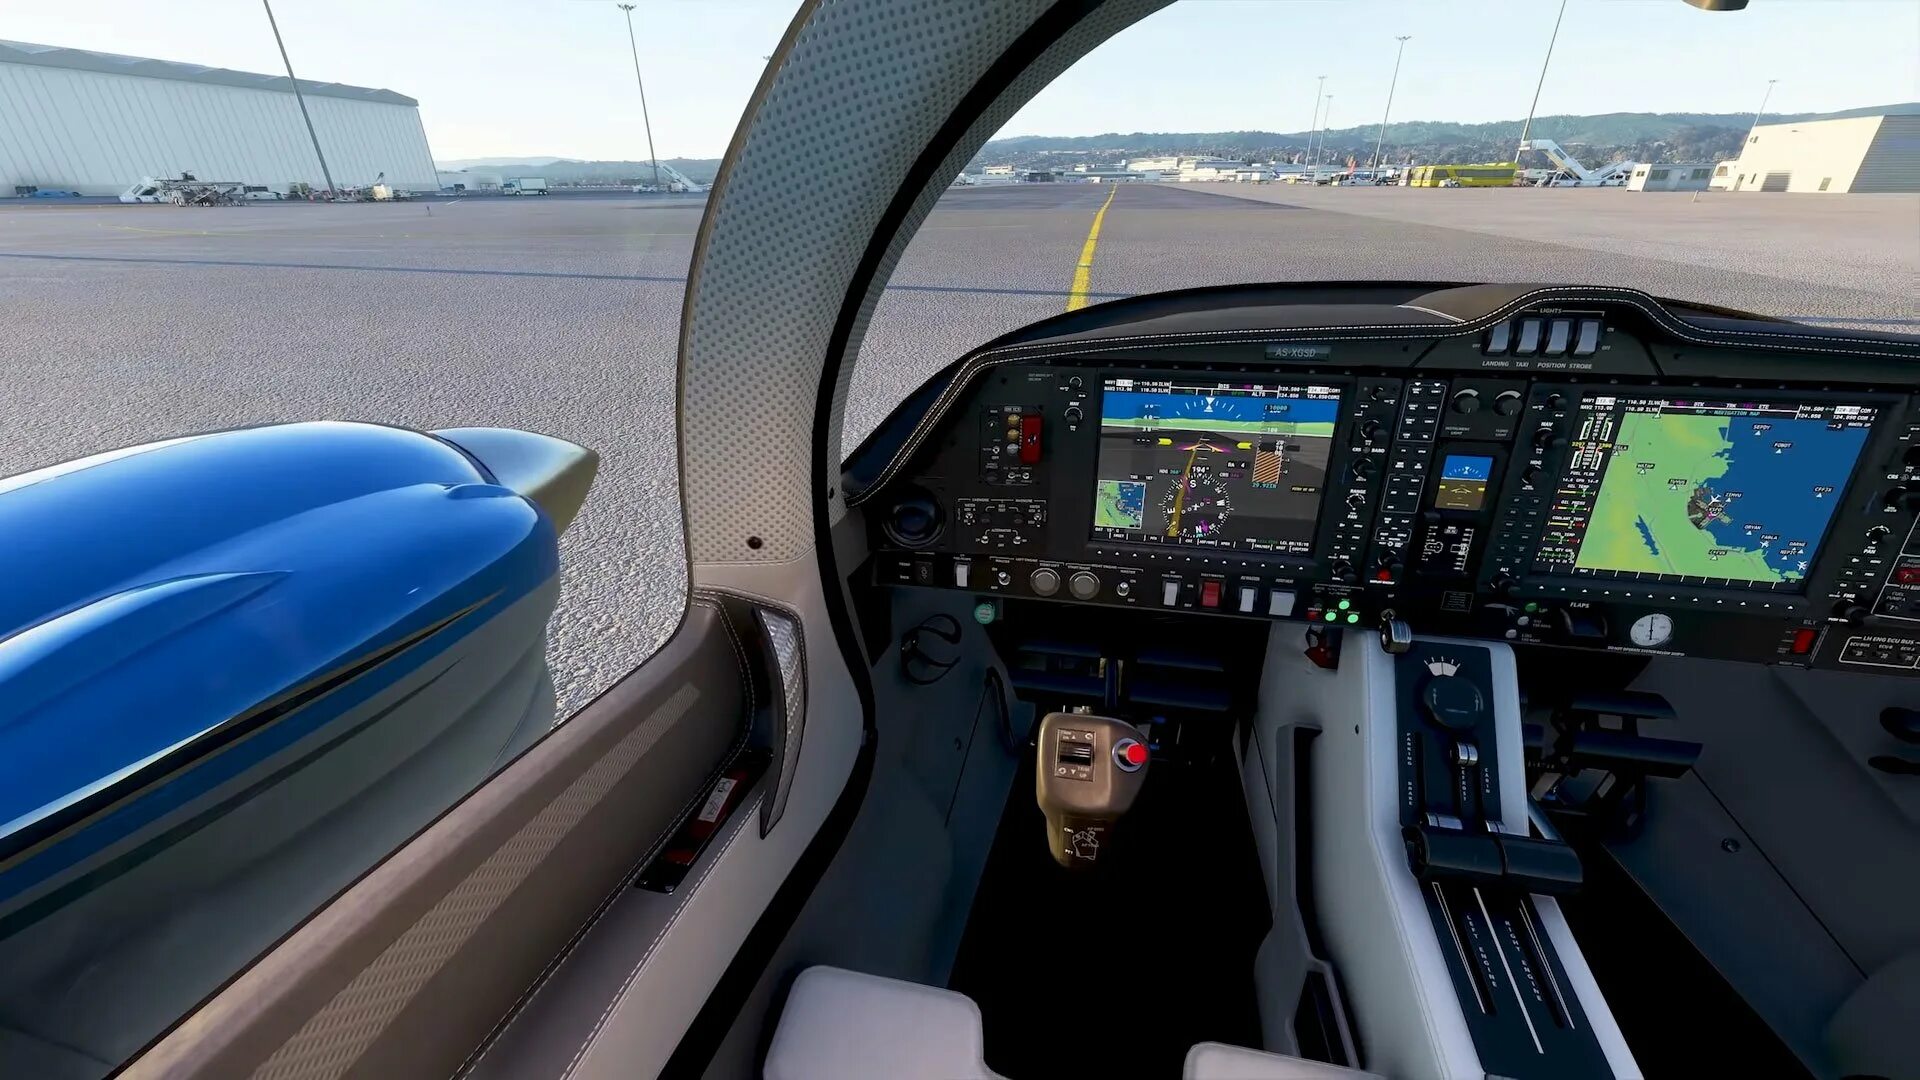 Майкрософт симулятор 2020 купить. Microsoft Flight Simulator (2020). Майкрософт Флайт симулятор 2020. MS FS 2020. MFS 2020 кокпит.